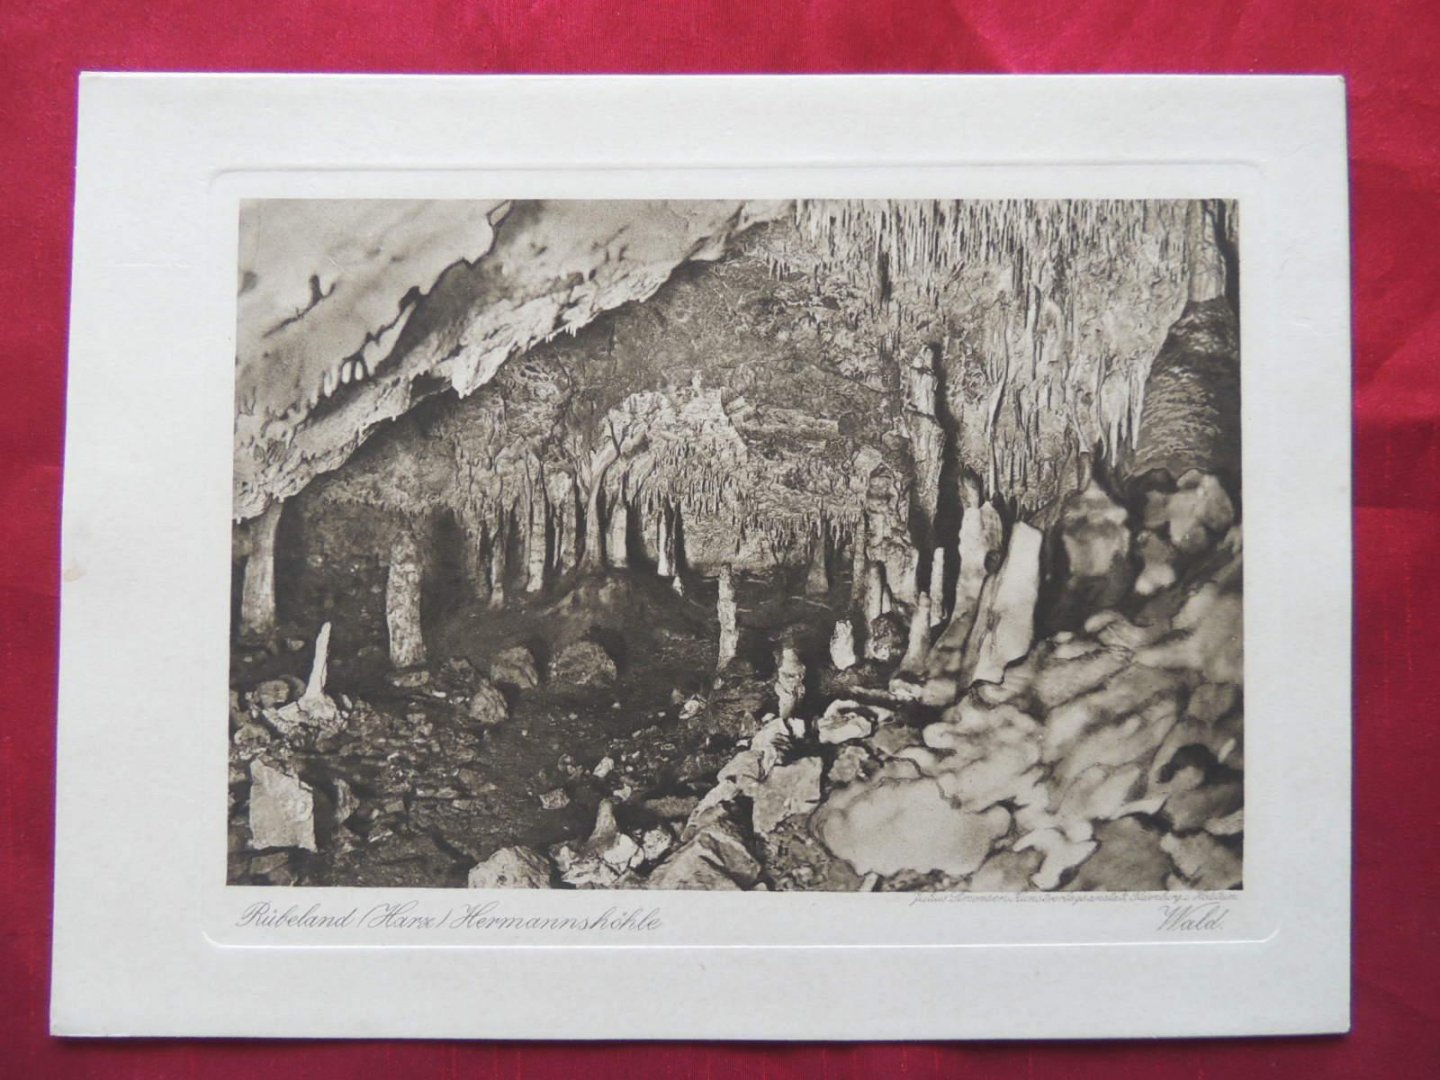  - RUBELAND UND DIE HERMANNSHOHLE  -  RÜBELAND und Die Hermannshöhle.  6 der schönsten ansichten in echtem Kupfertiefdruck